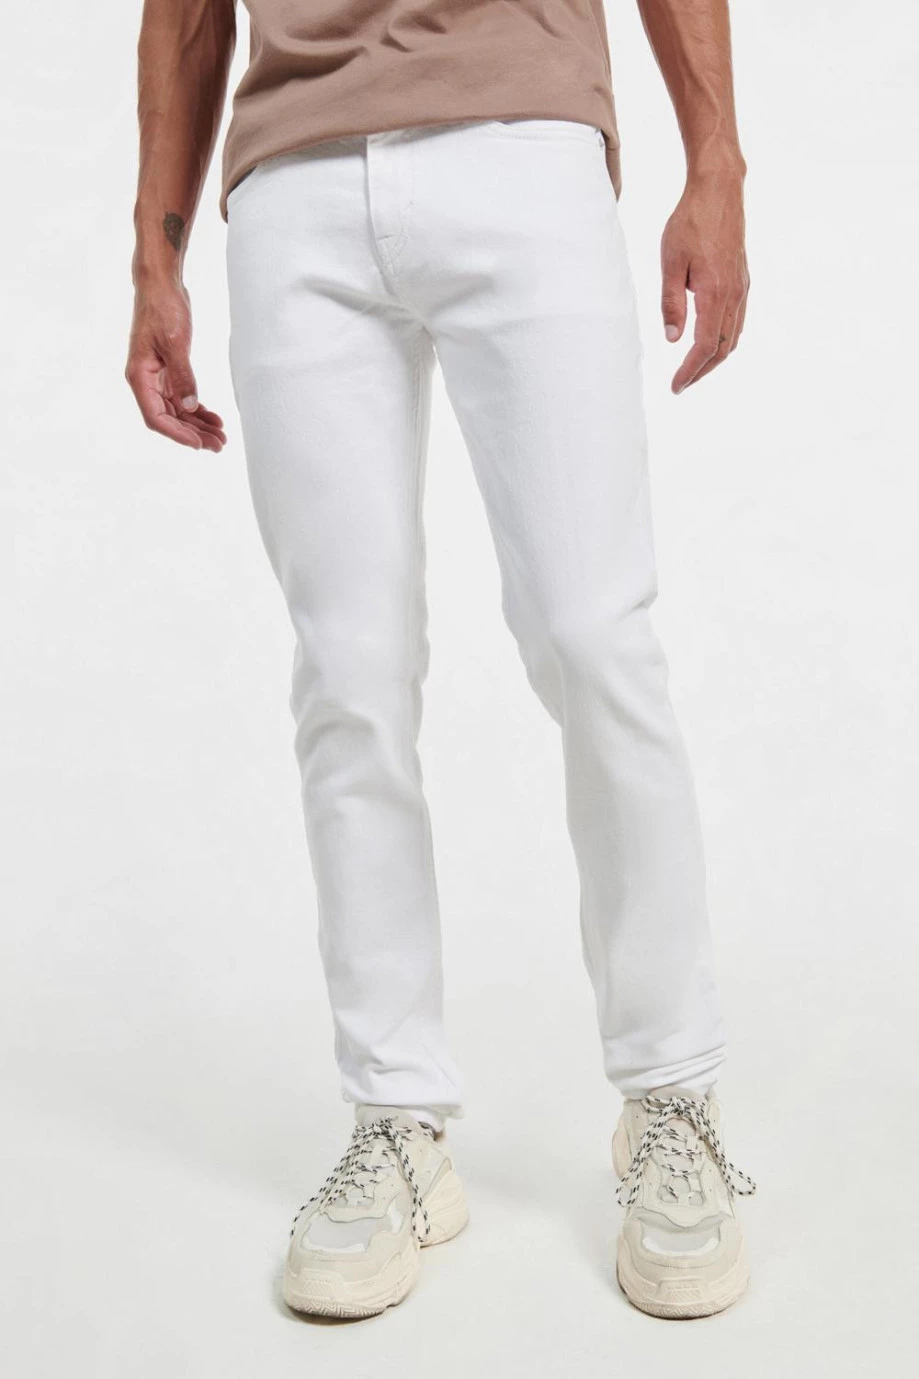 Jean blanco tipo slim con ajuste ceñido, tiro bajo y bolsillos funcionales